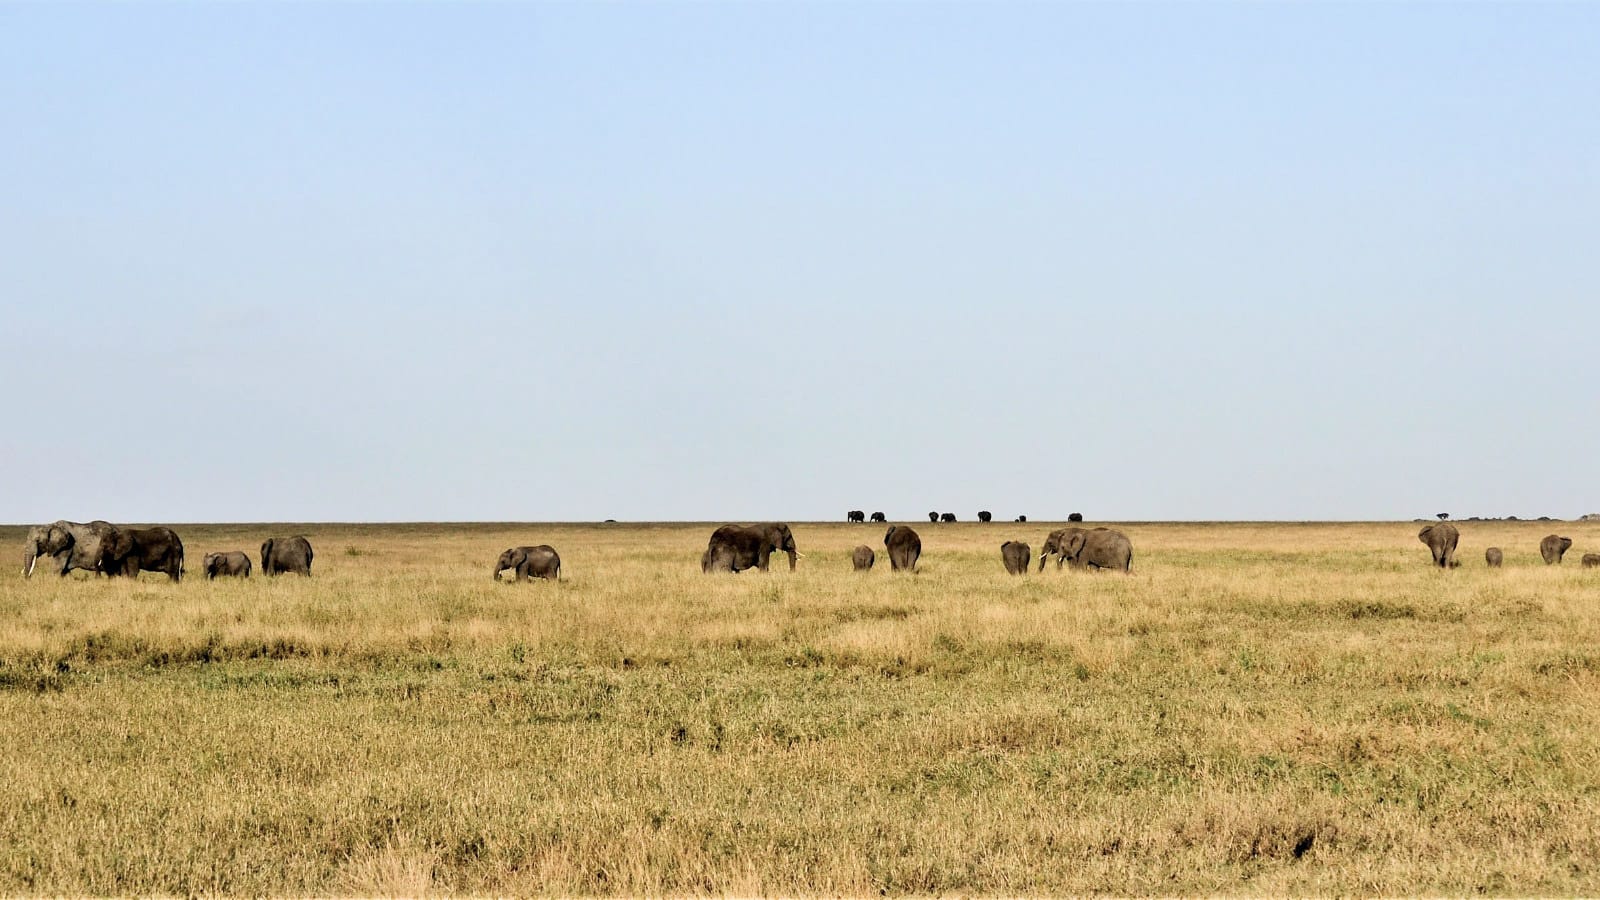 llanuras del Serengeti. Samaki Safaris